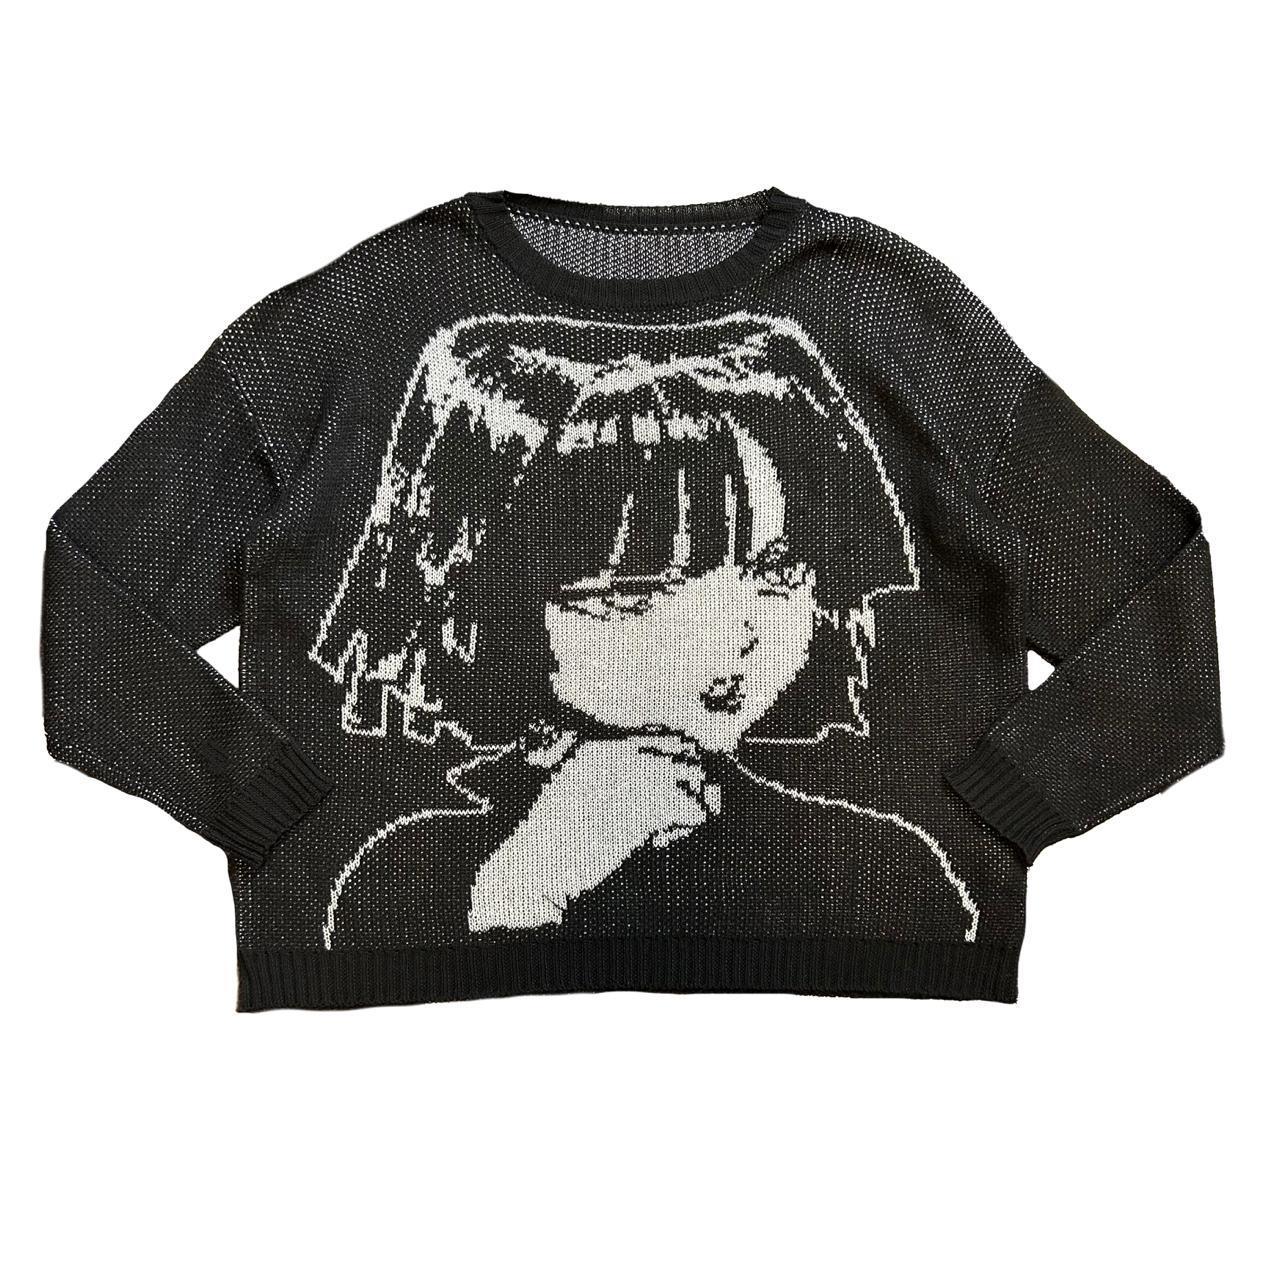 Printed Cotton Jersey Knit - Anime Girls & Cats - Gala Fabrics